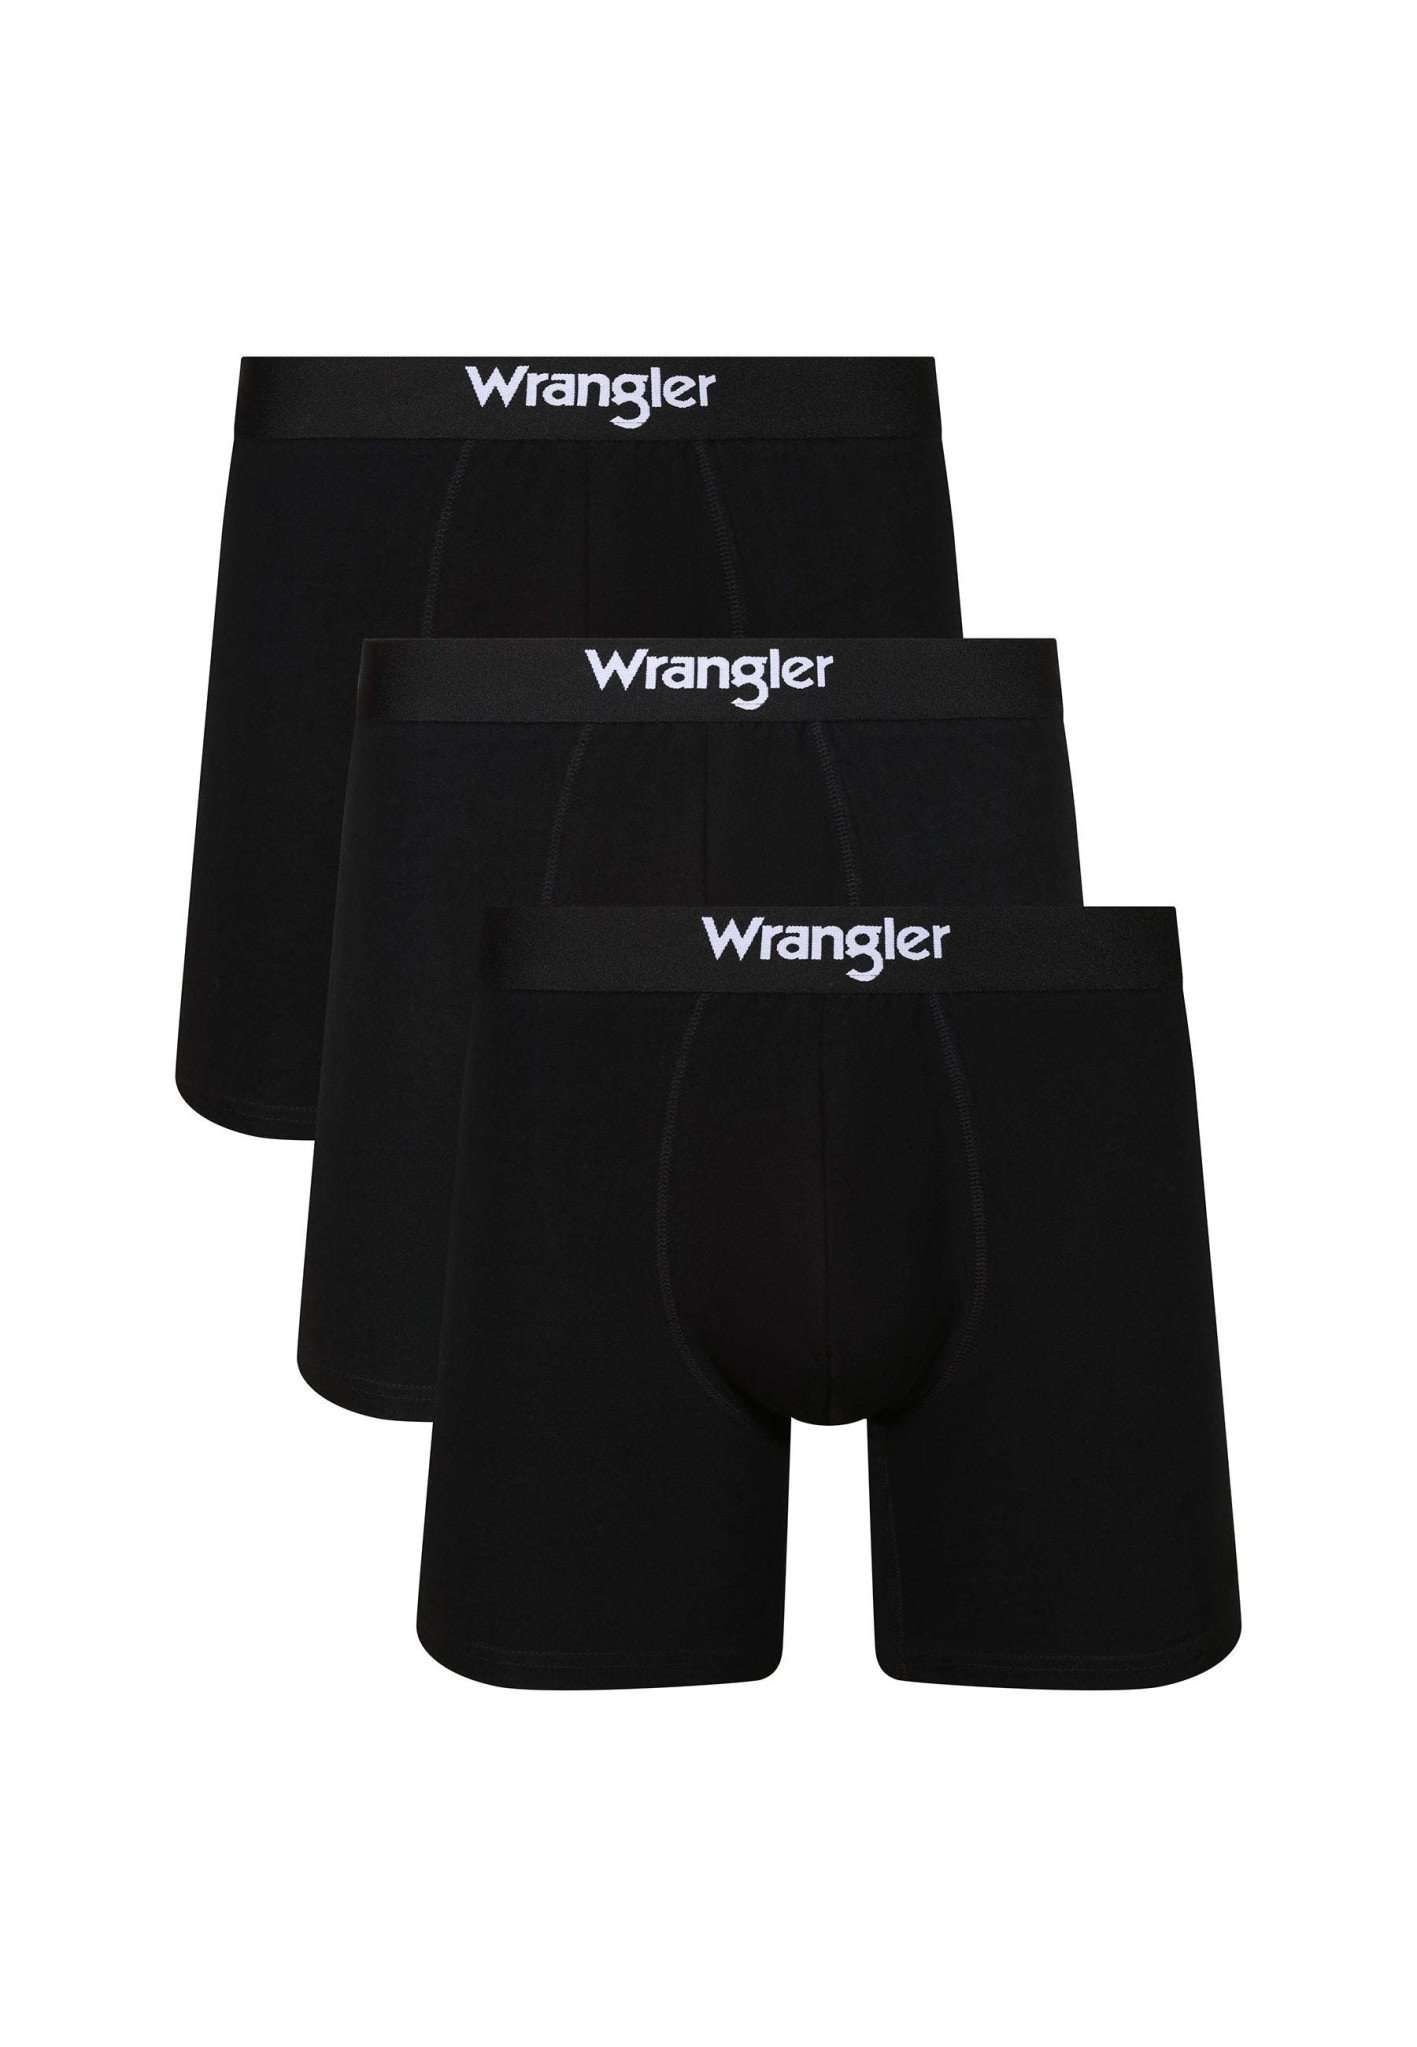 3 Pack Medium Trunks Wilkins in Black Unterwäsche Wrangler   